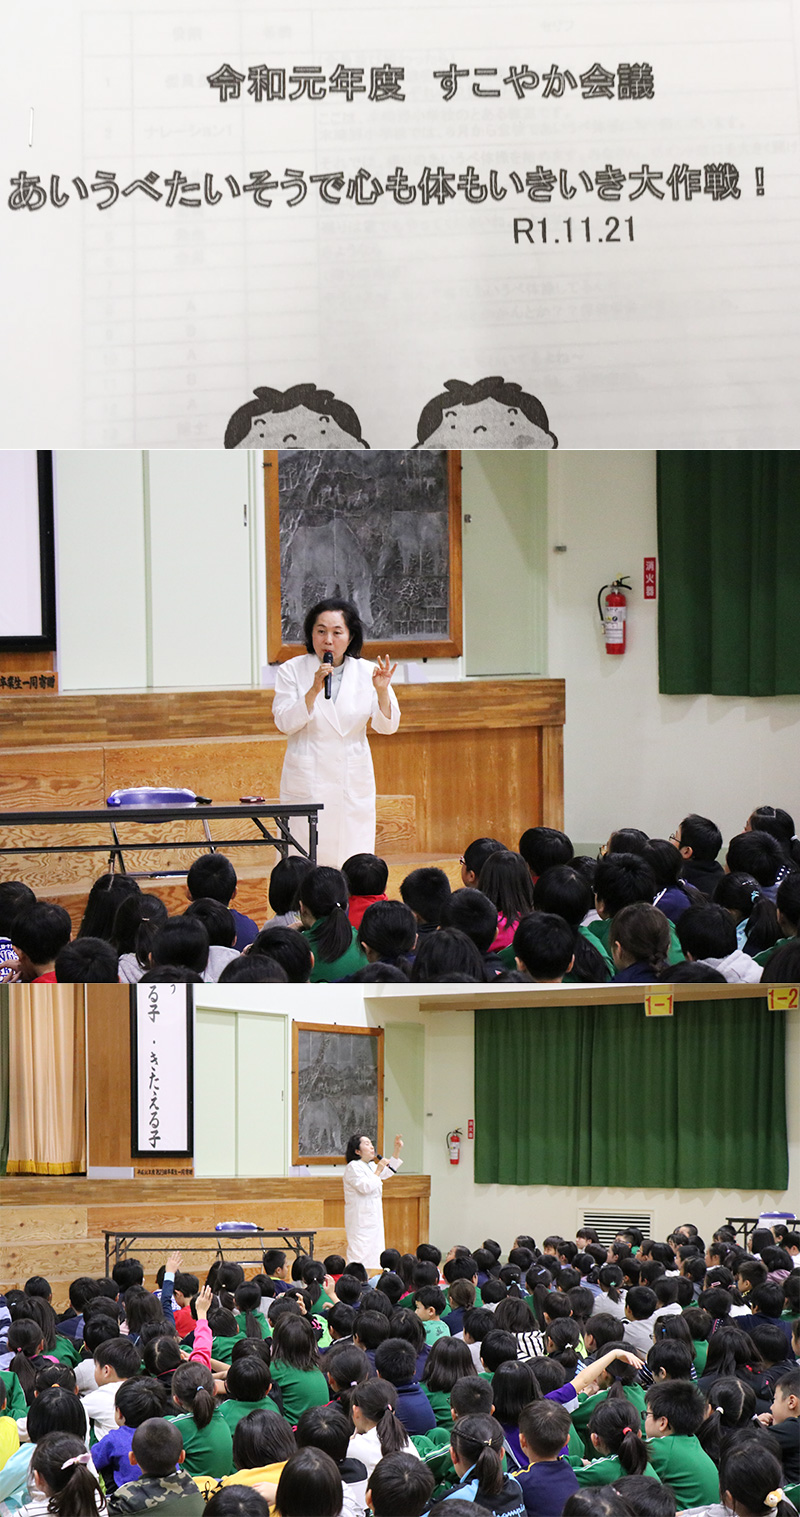 院長の担当校である木崎野小学校で、健康教育の一貫として行われている「すこやか会議」（児童、保護者、先生が一緒に、課題に取り組み、それについて発表する場）で講話をしてきました。